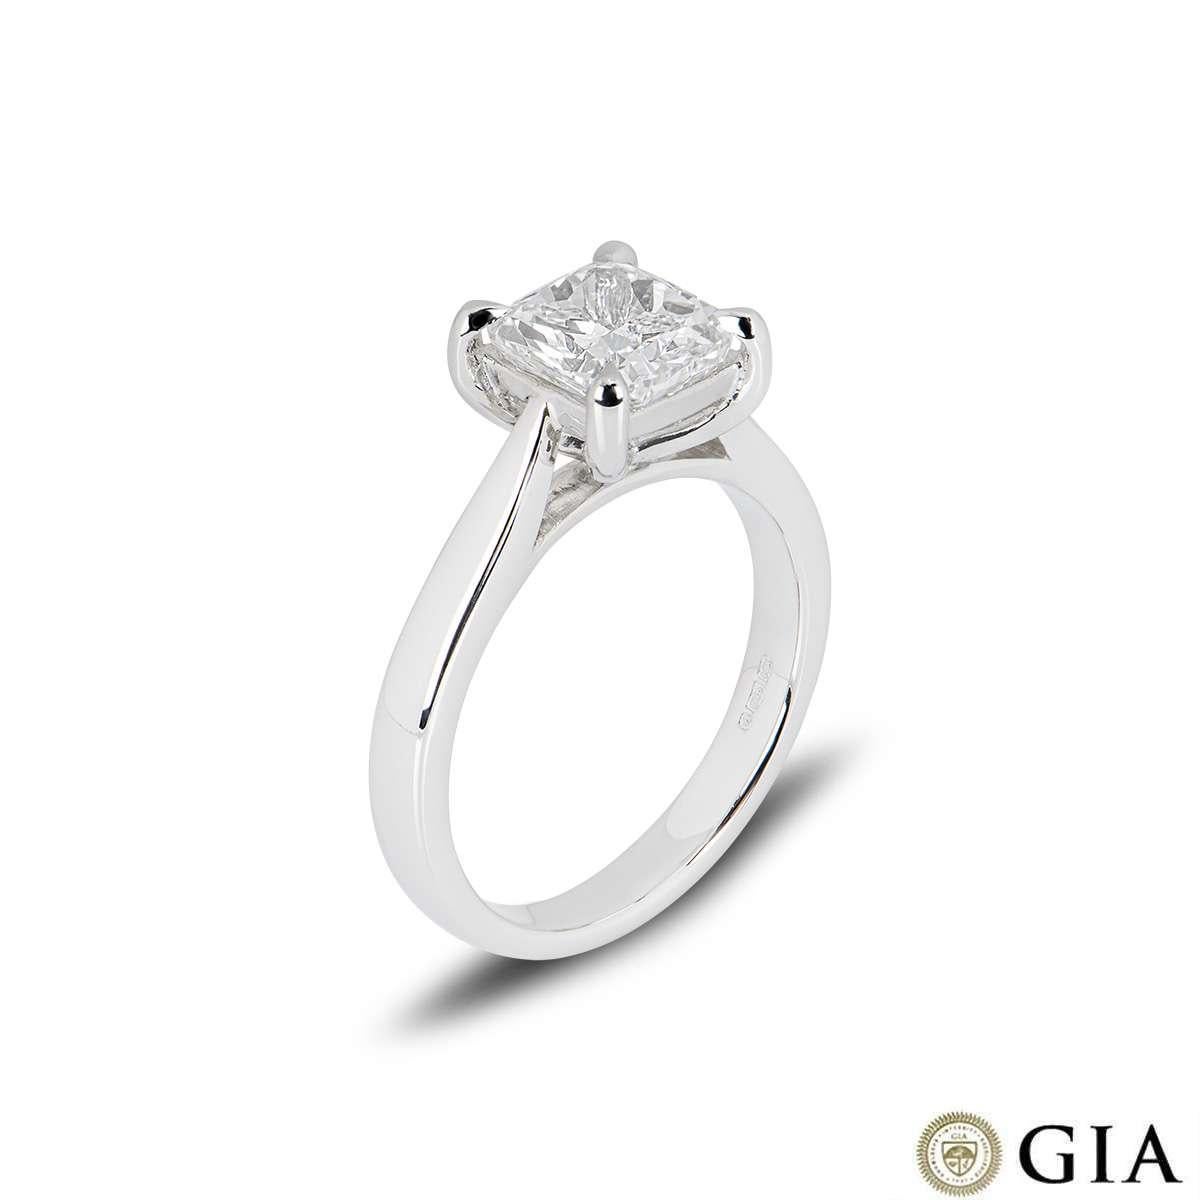 Ein atemberaubender Verlobungsring aus Platin mit Diamanten im Kissenschliff. Der Ring besteht aus einem kissenförmig geschliffenen Diamanten in einer Vier-Krallen-Fassung mit einem Gewicht von 2,00ct, Farbe F und Reinheit VS2. Der Ring hat derzeit